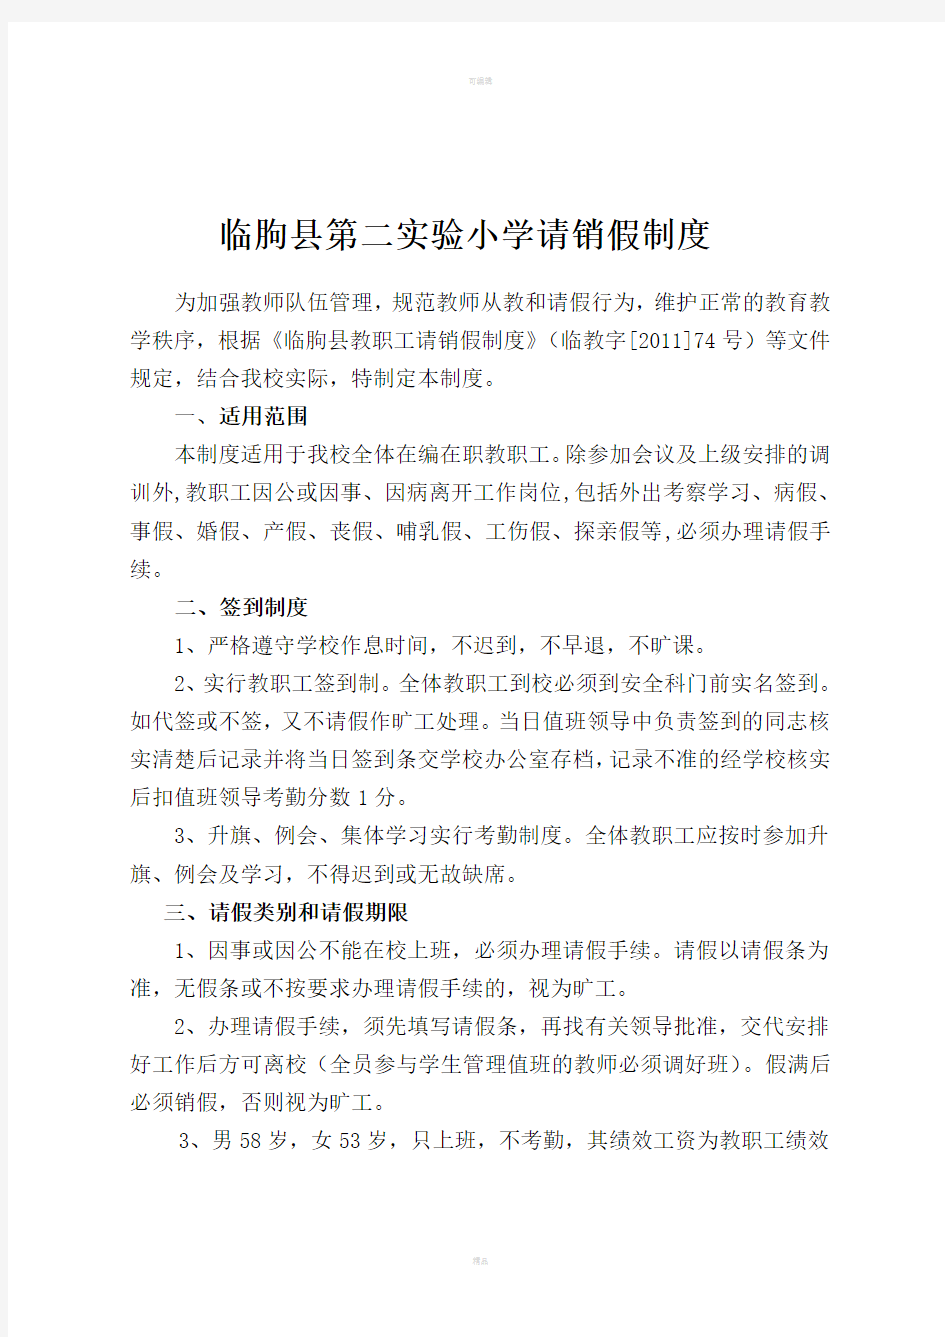 临朐县第二实验小学教职工请假制度